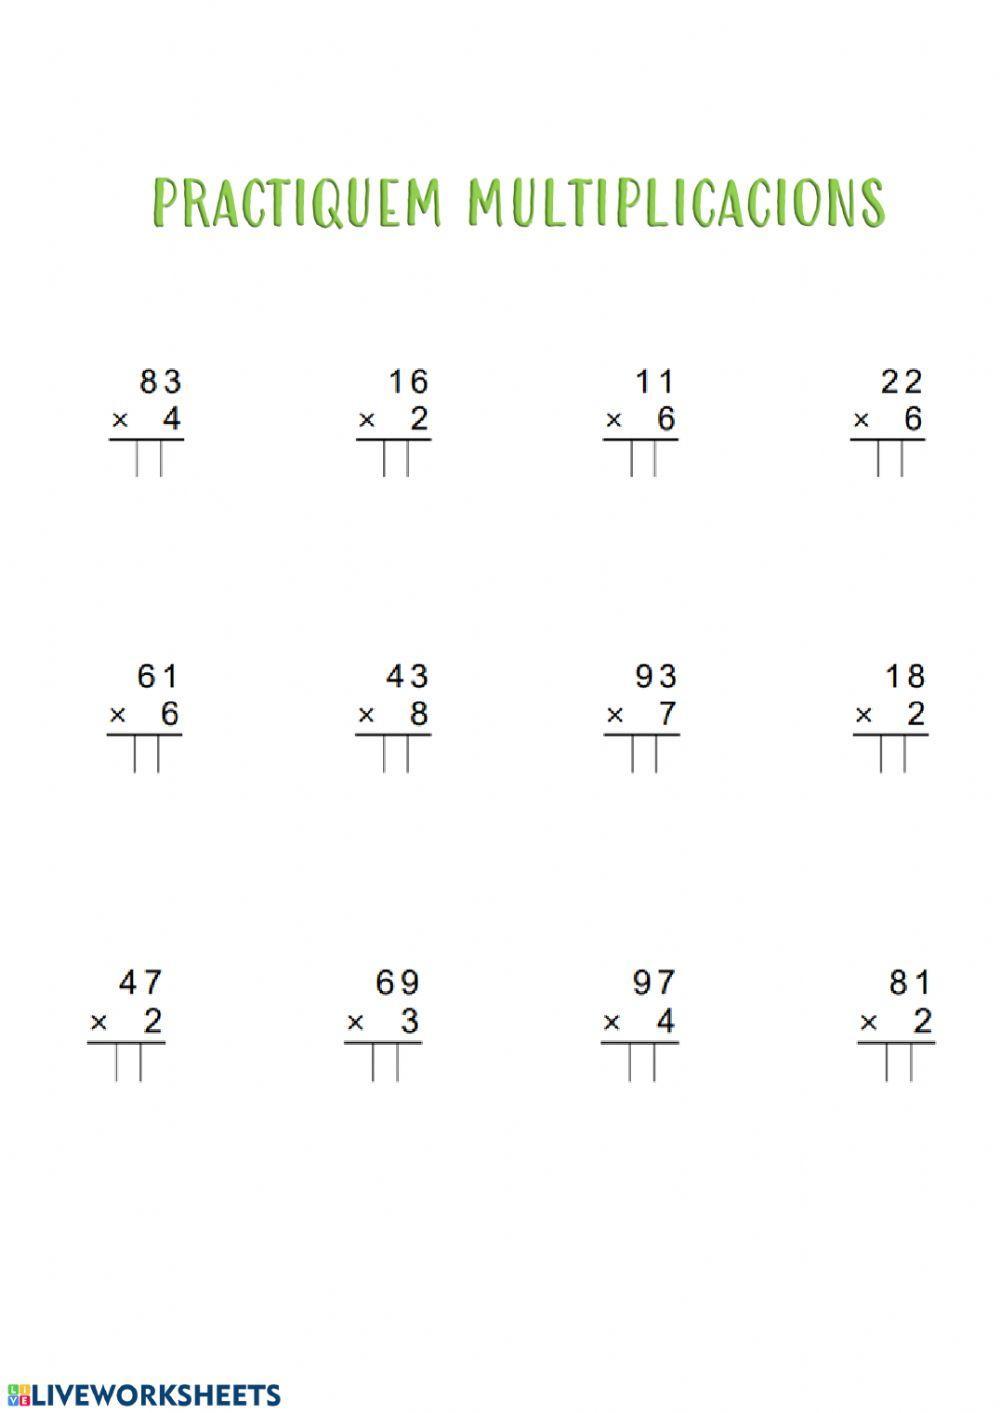 Practiquem multiplicacions 1